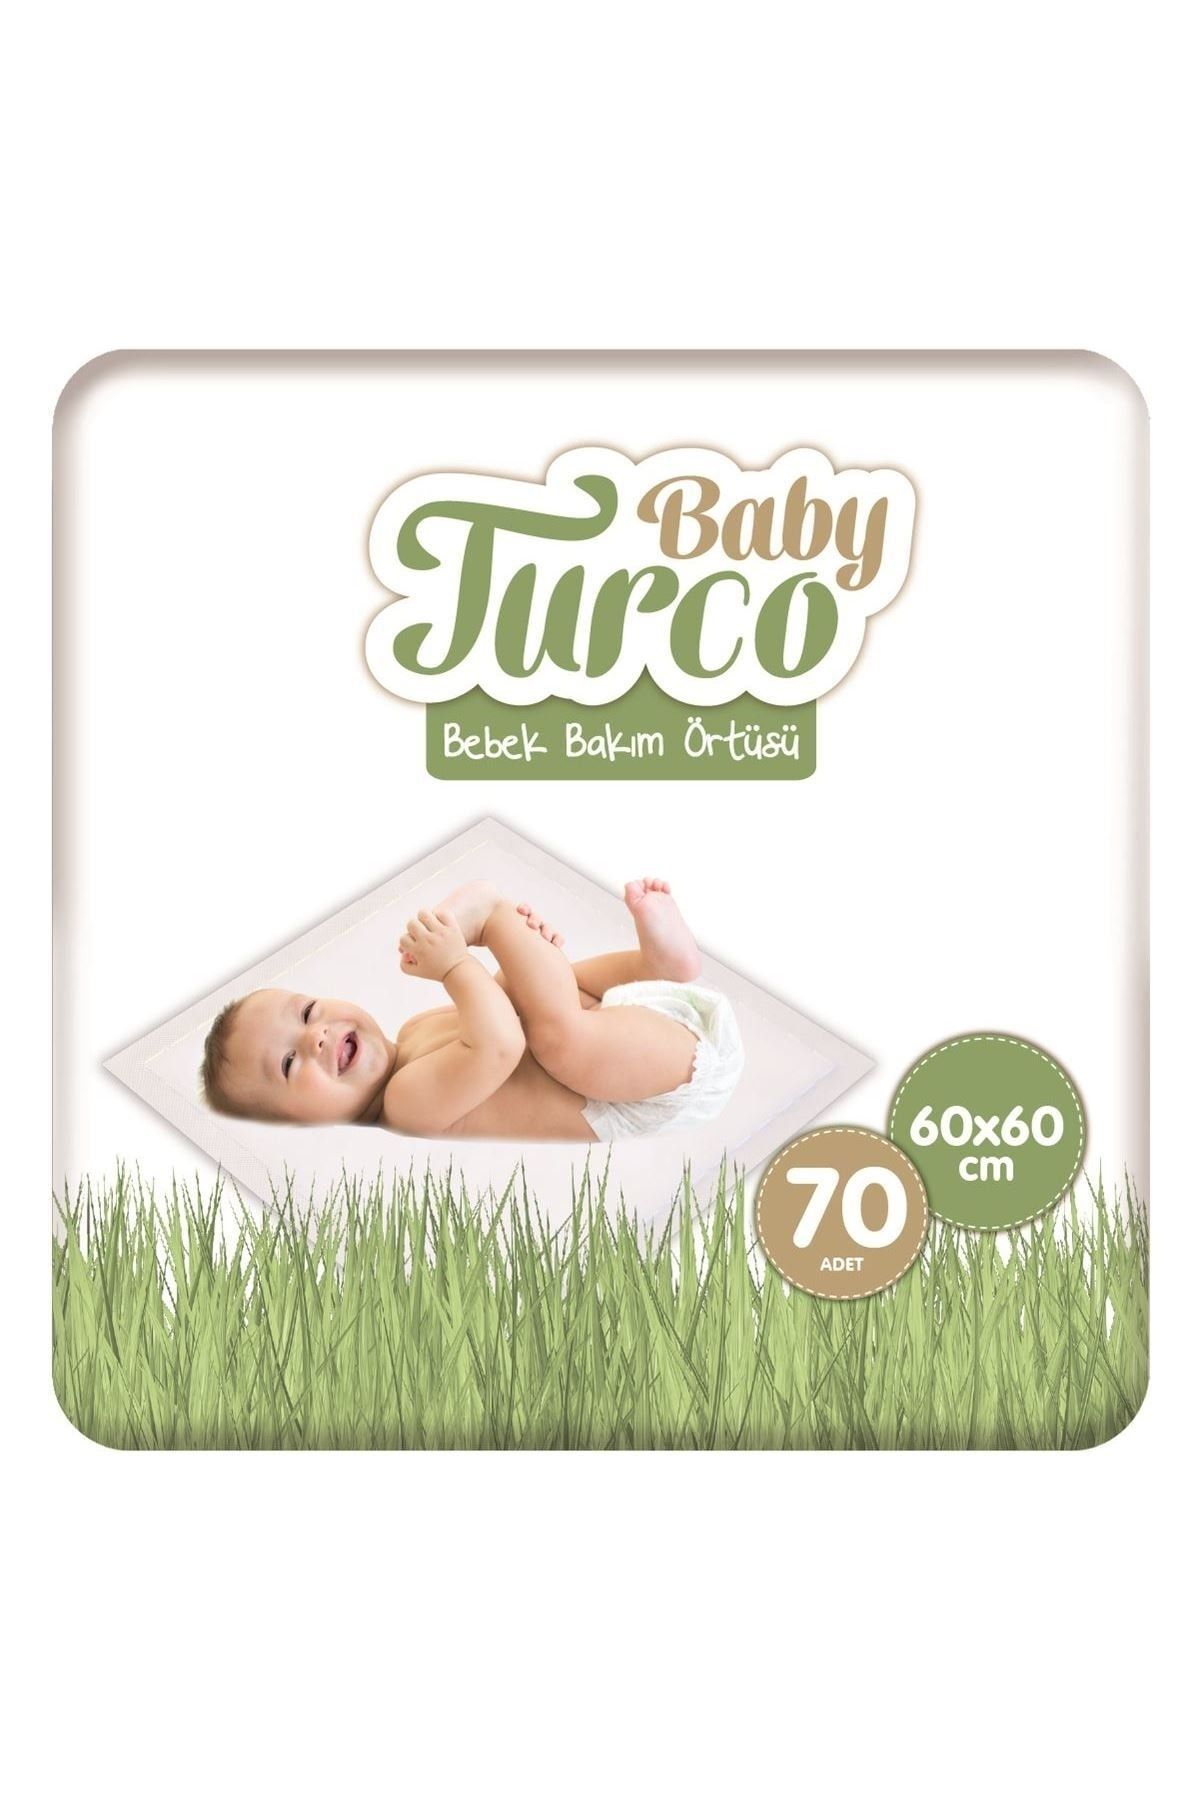 Baby Turco Bebek Bakım Örtüsü 60x60 Cm 7x10 70 Adet